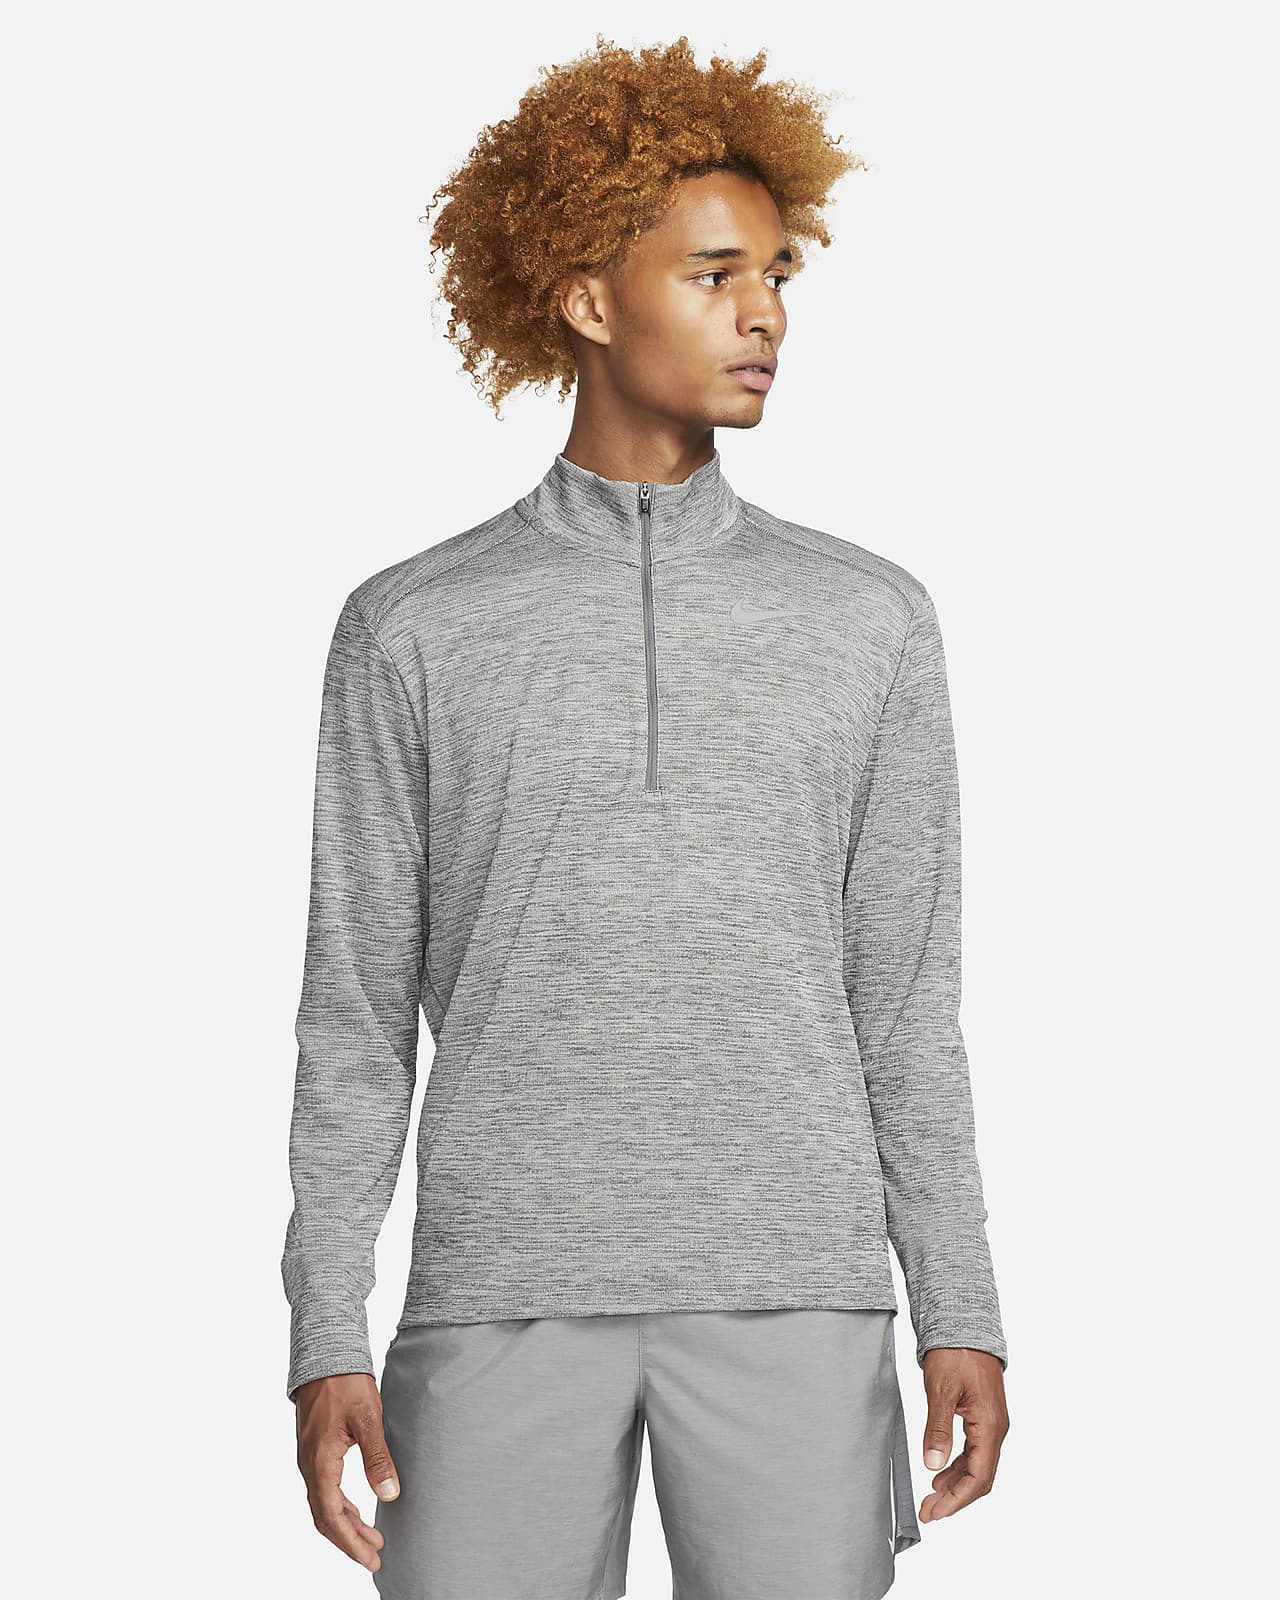 Maglia da running con zip a metà lunghezza Nike Pacer - Uomo